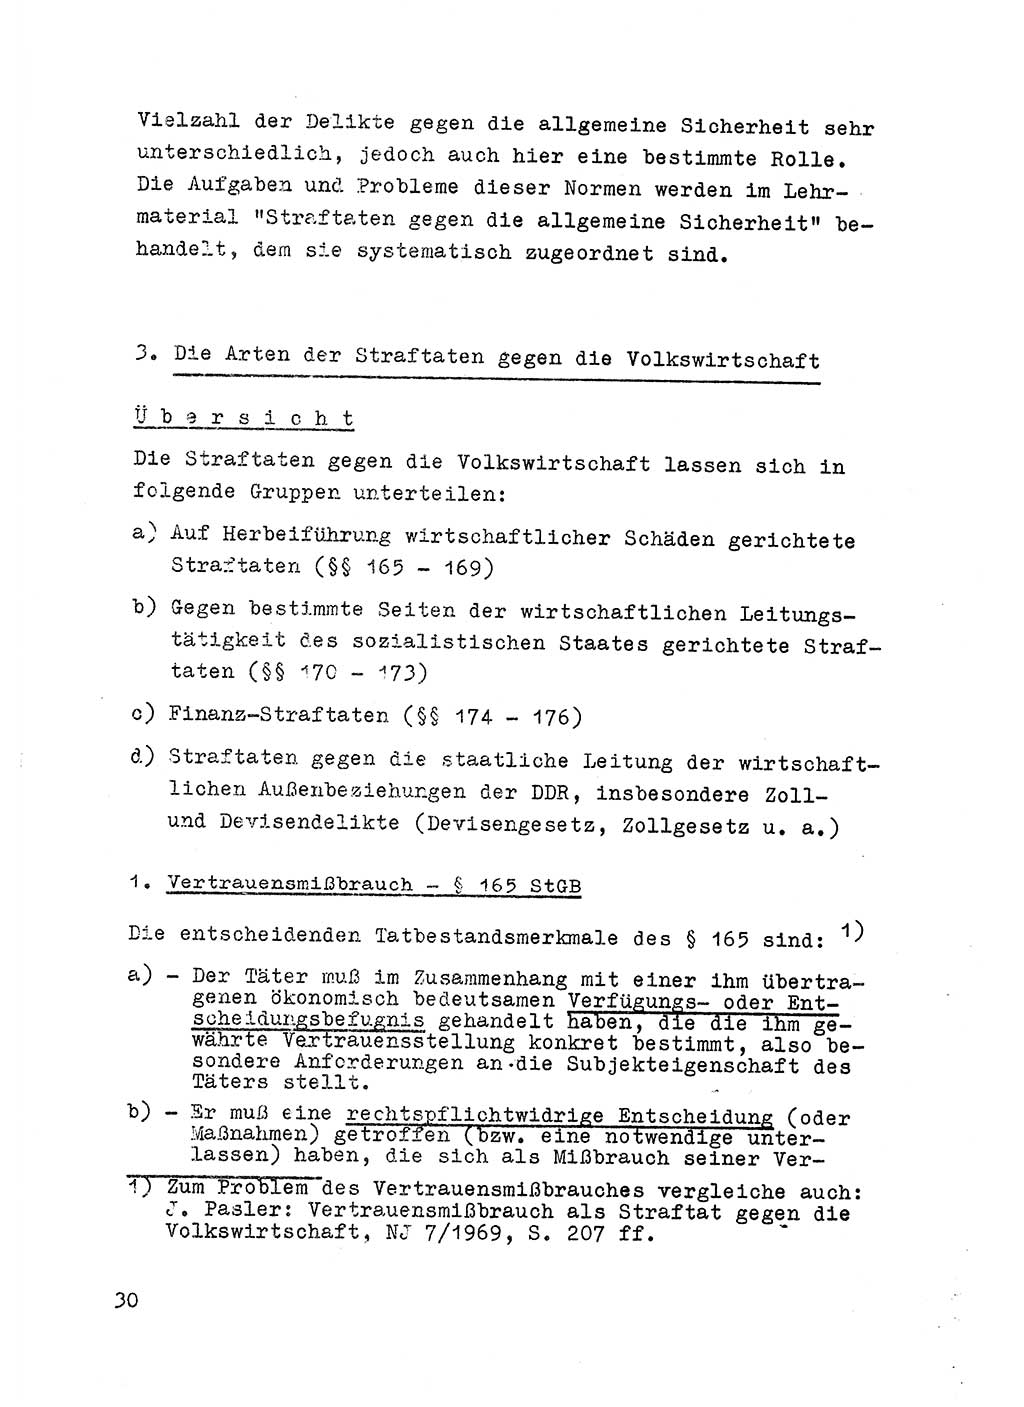 Strafrecht der DDR (Deutsche Demokratische Republik), Besonderer Teil, Lehrmaterial, Heft 6 1970, Seite 30 (Strafr. DDR BT Lehrmat. H. 6 1970, S. 30)